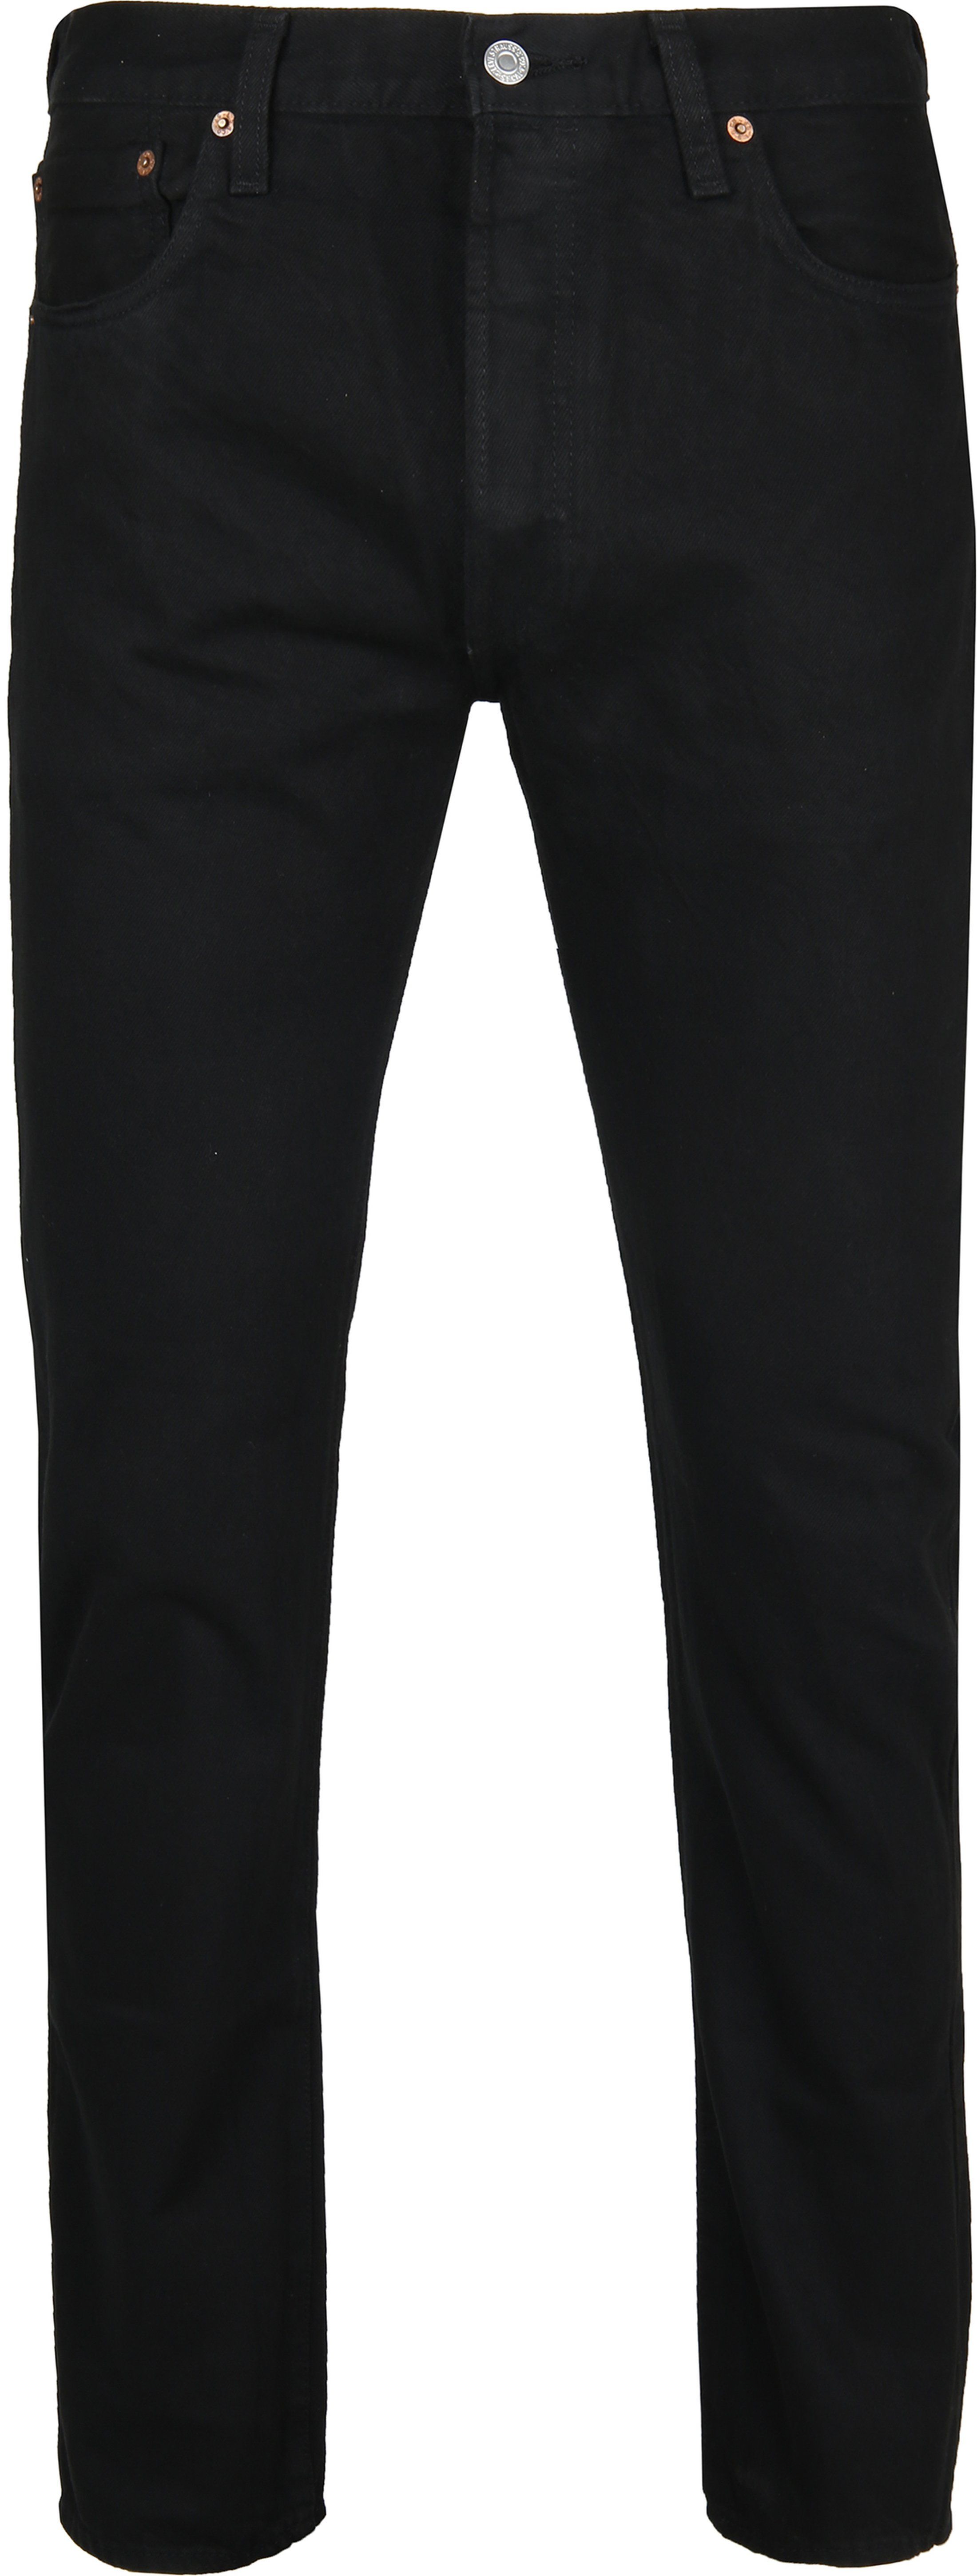 Levi's 501 Jeans Original Fit 0165 Black size W 33